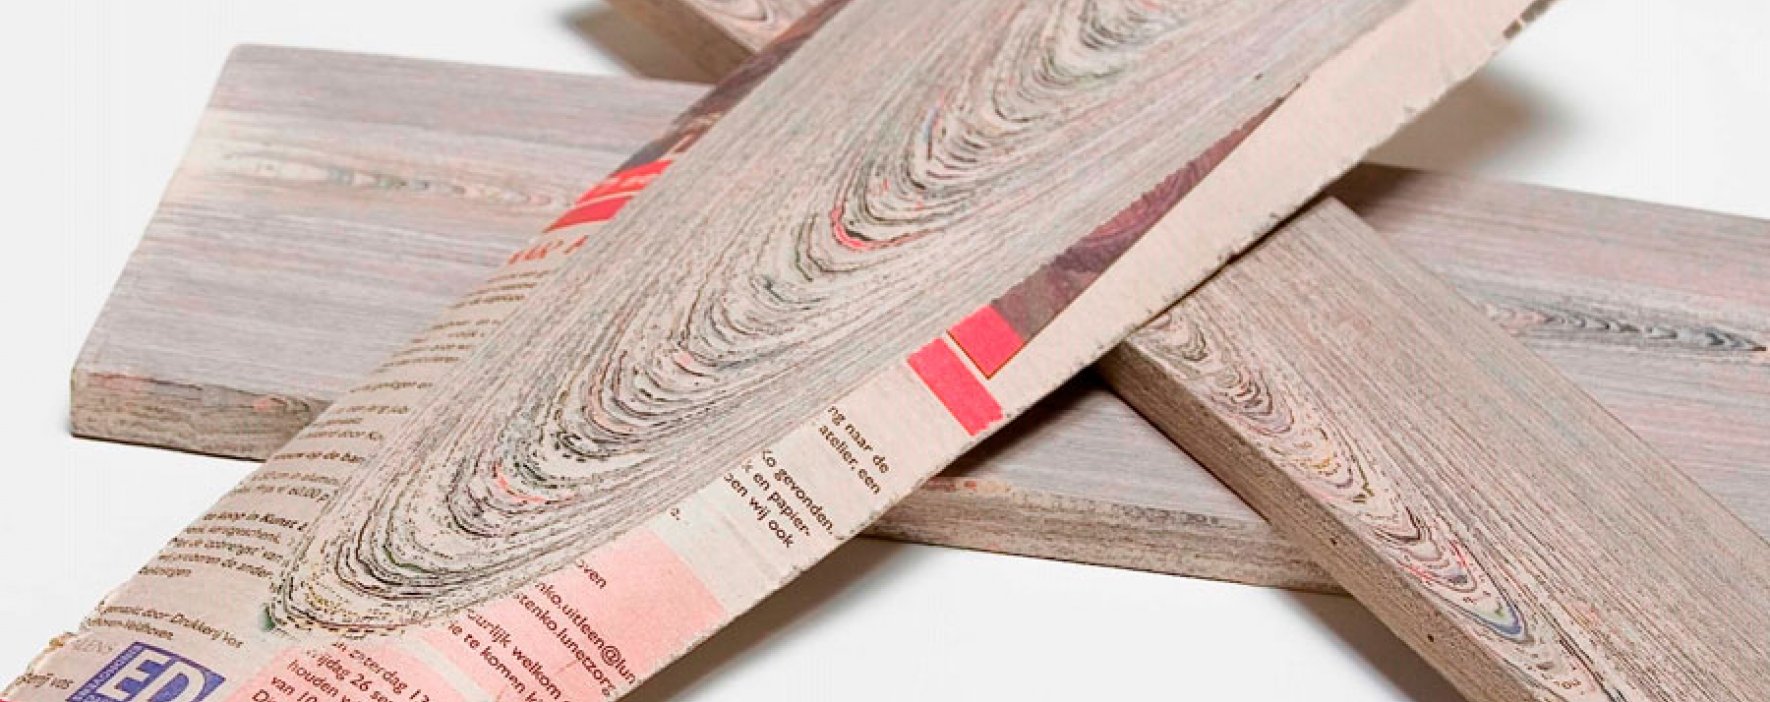 Kranthout, el papel de periódico hecho madera 